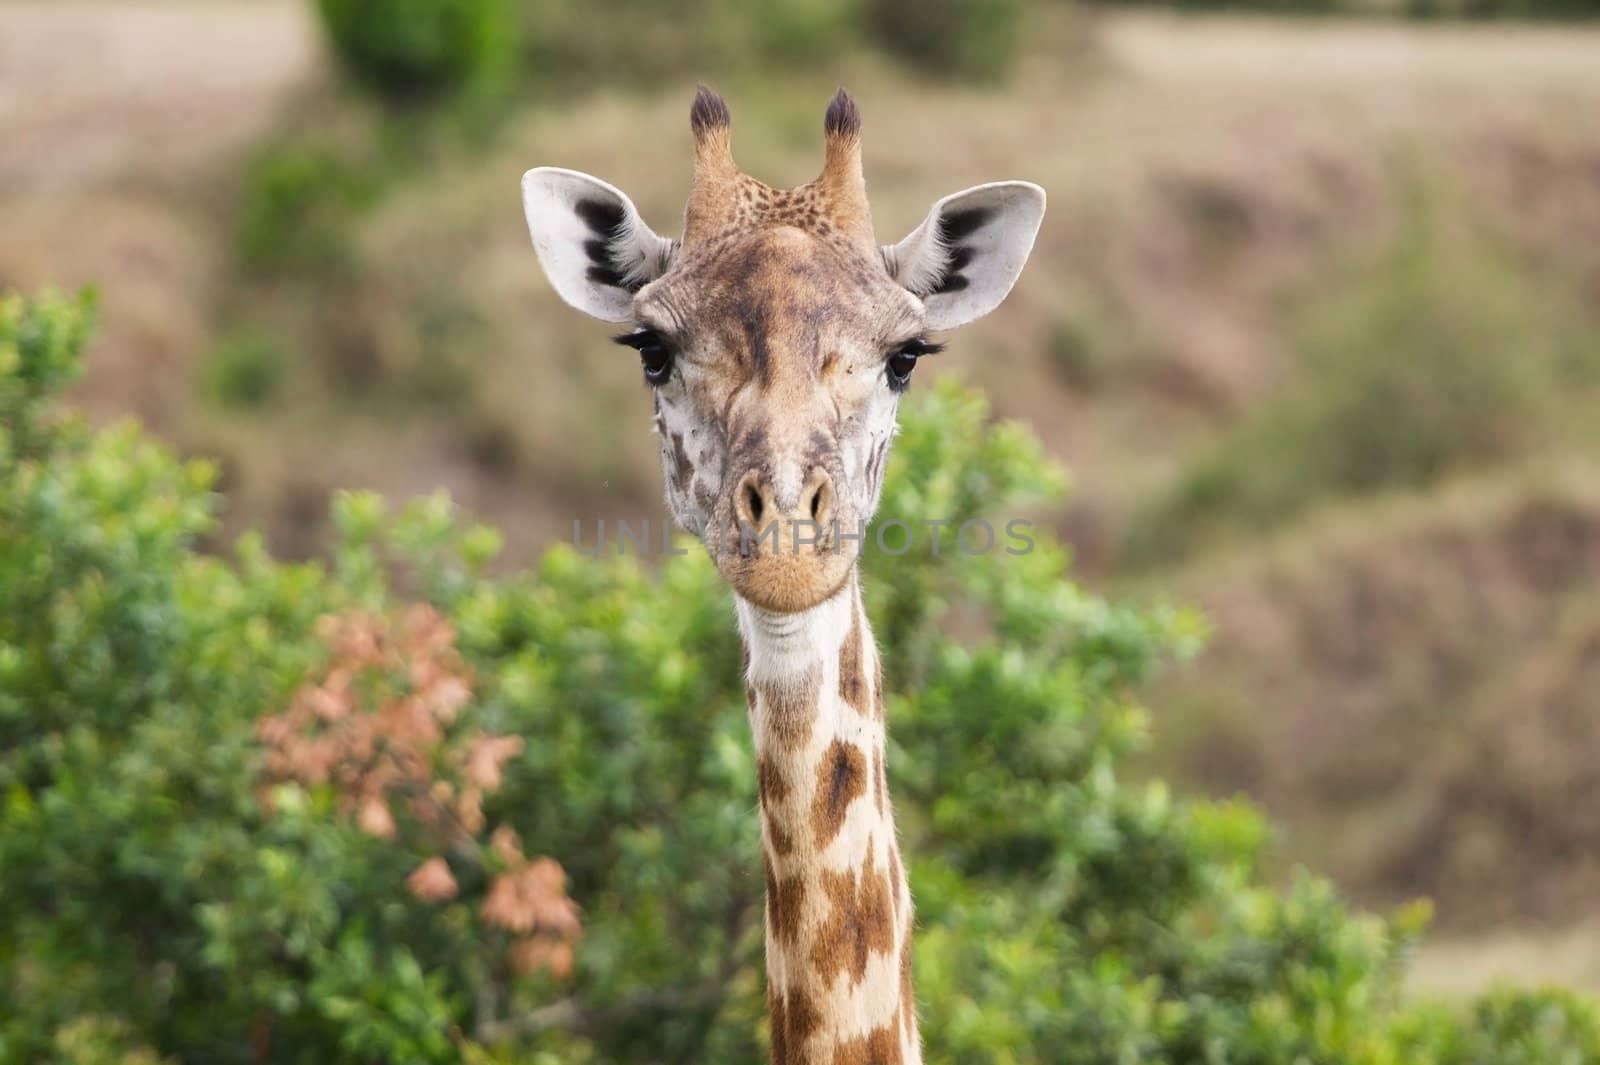 Giraffe Masai race (Giraffa camelopardalis) portrait